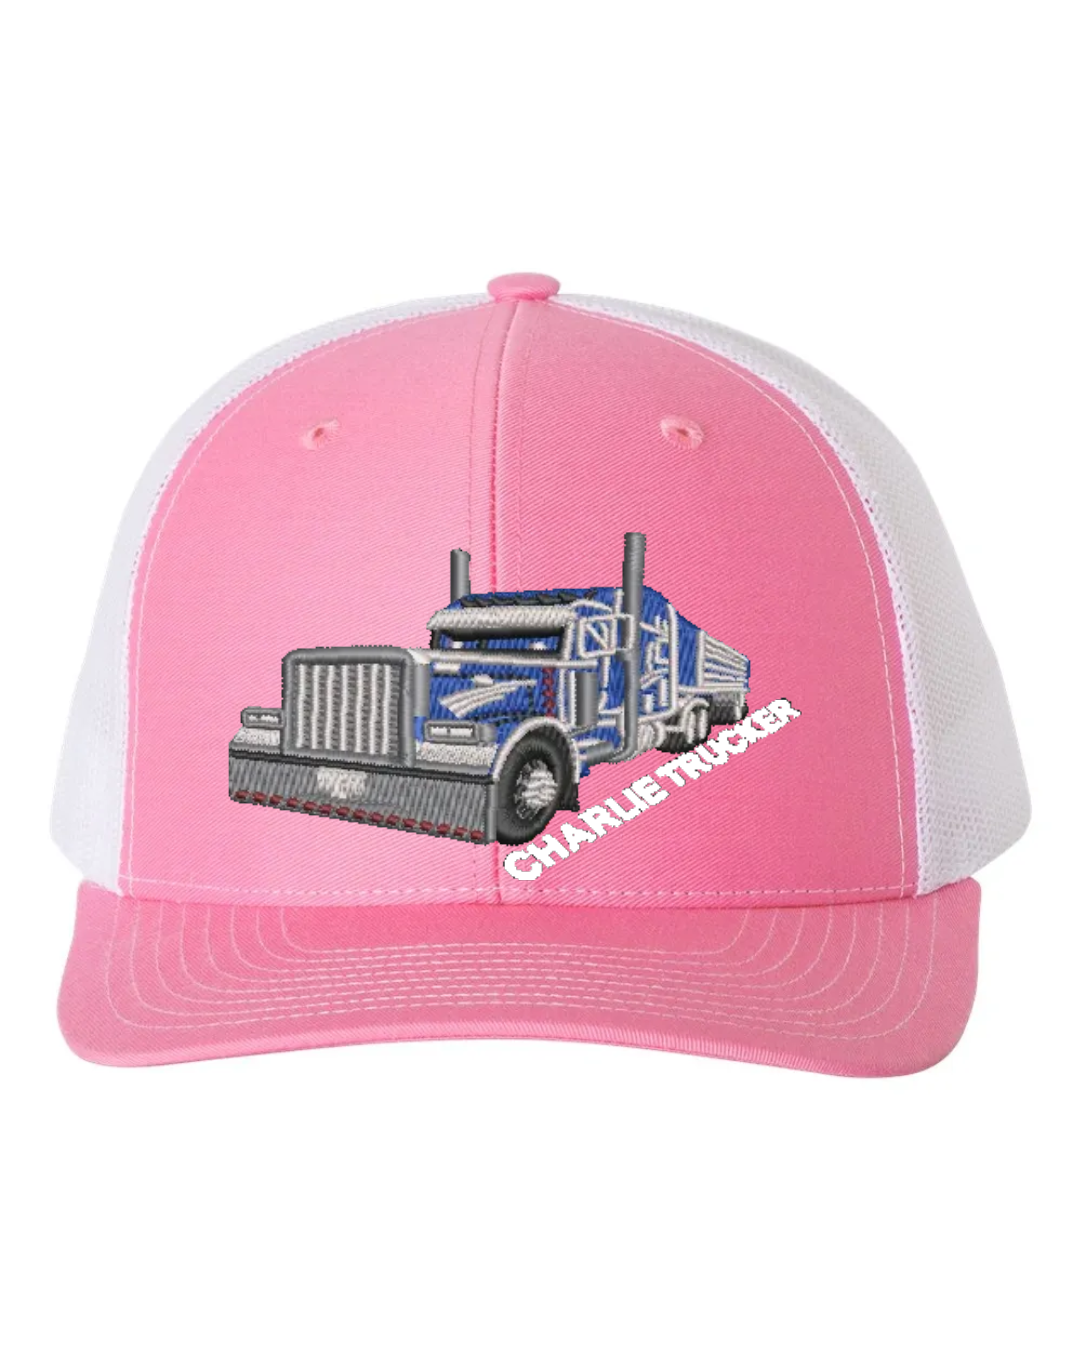 Charlie Trucker Embroidered Richardson 112 Trucker Hat